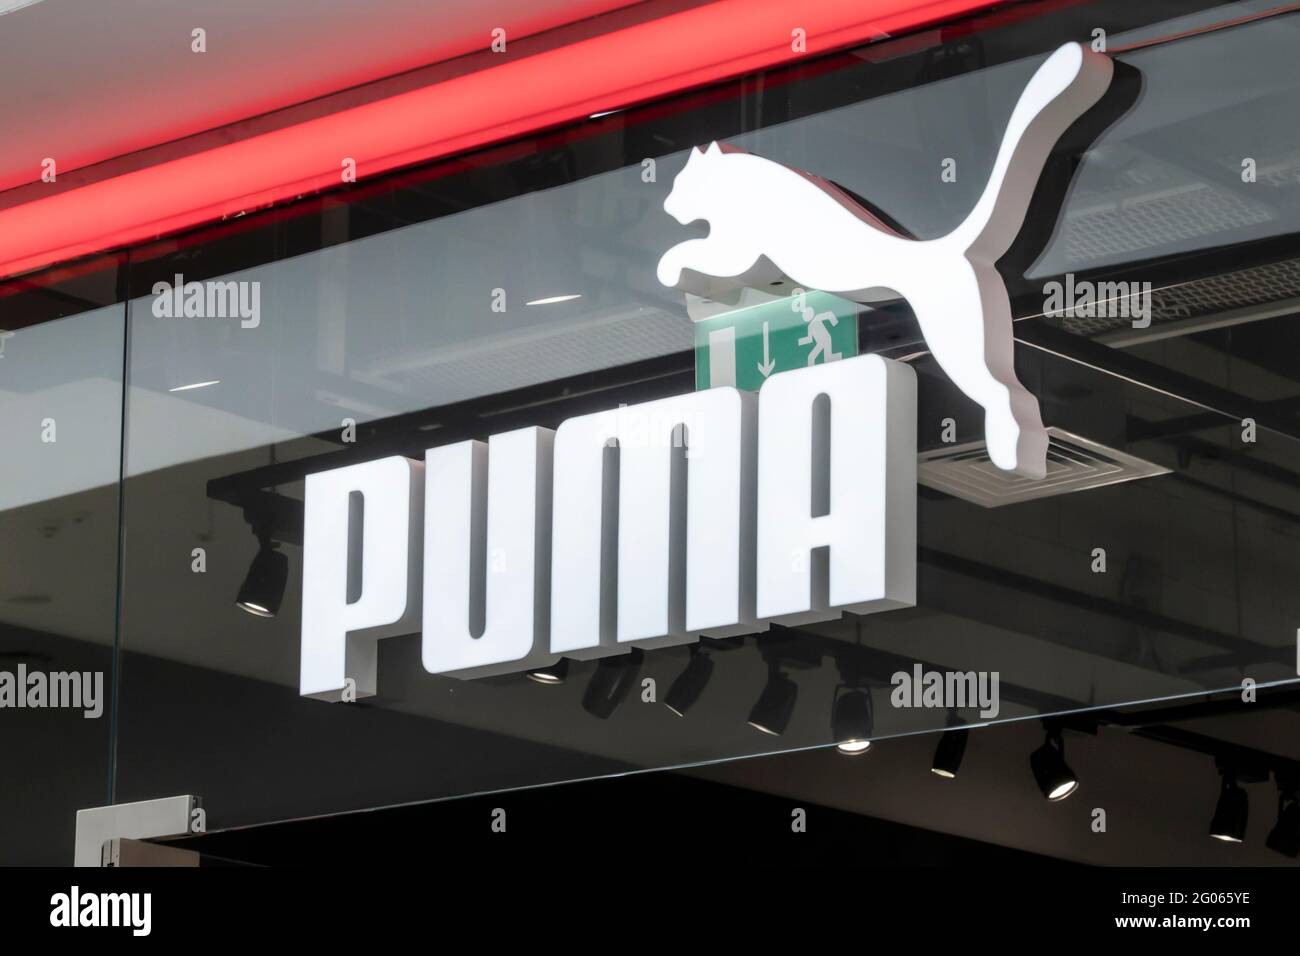 el logotipo de la marca puma, un cartel sobre la entrada a la tienda de la  marca alemana para la producción de ropa deportiva y accesorios.  Krasnoyarsk, Rusia Fotografía de stock -